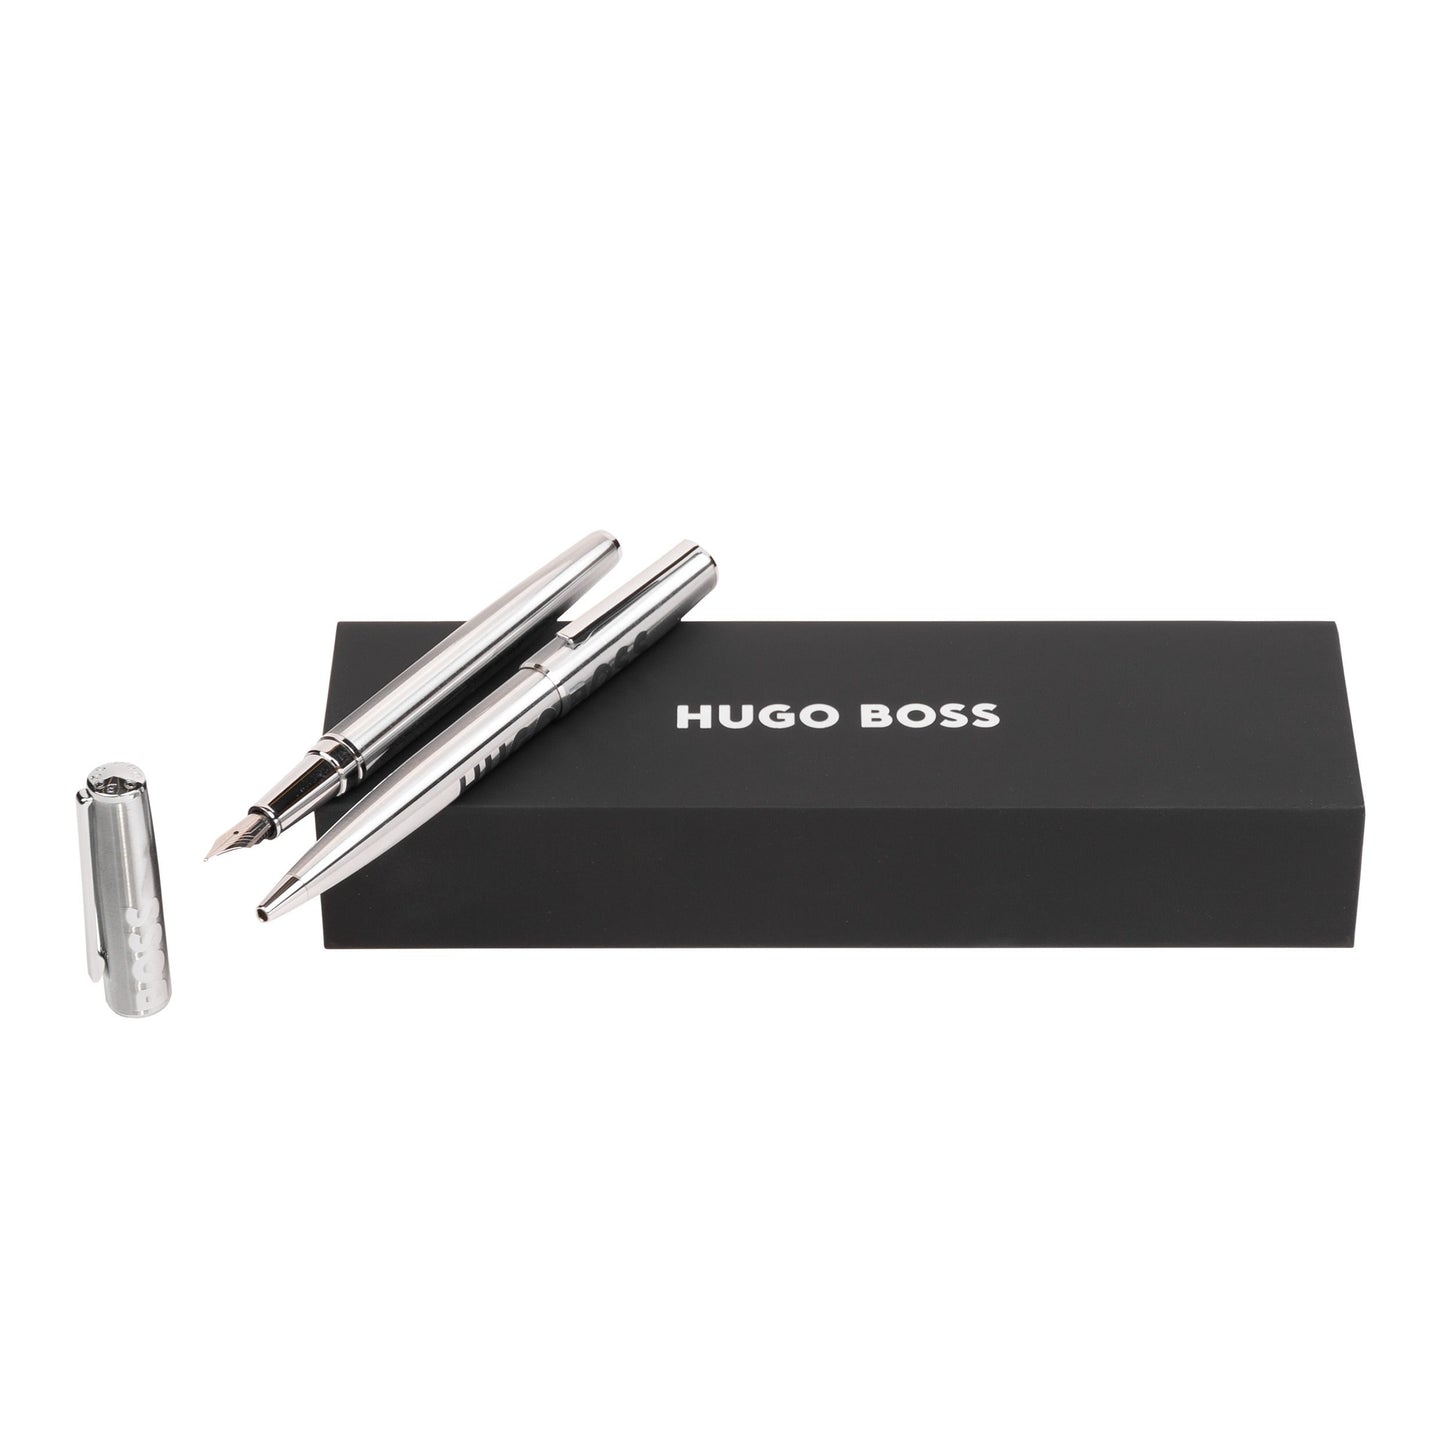 Hugo Boss Schreibset LABEL Chrome | Kugelschreiber und Füllfederhalter